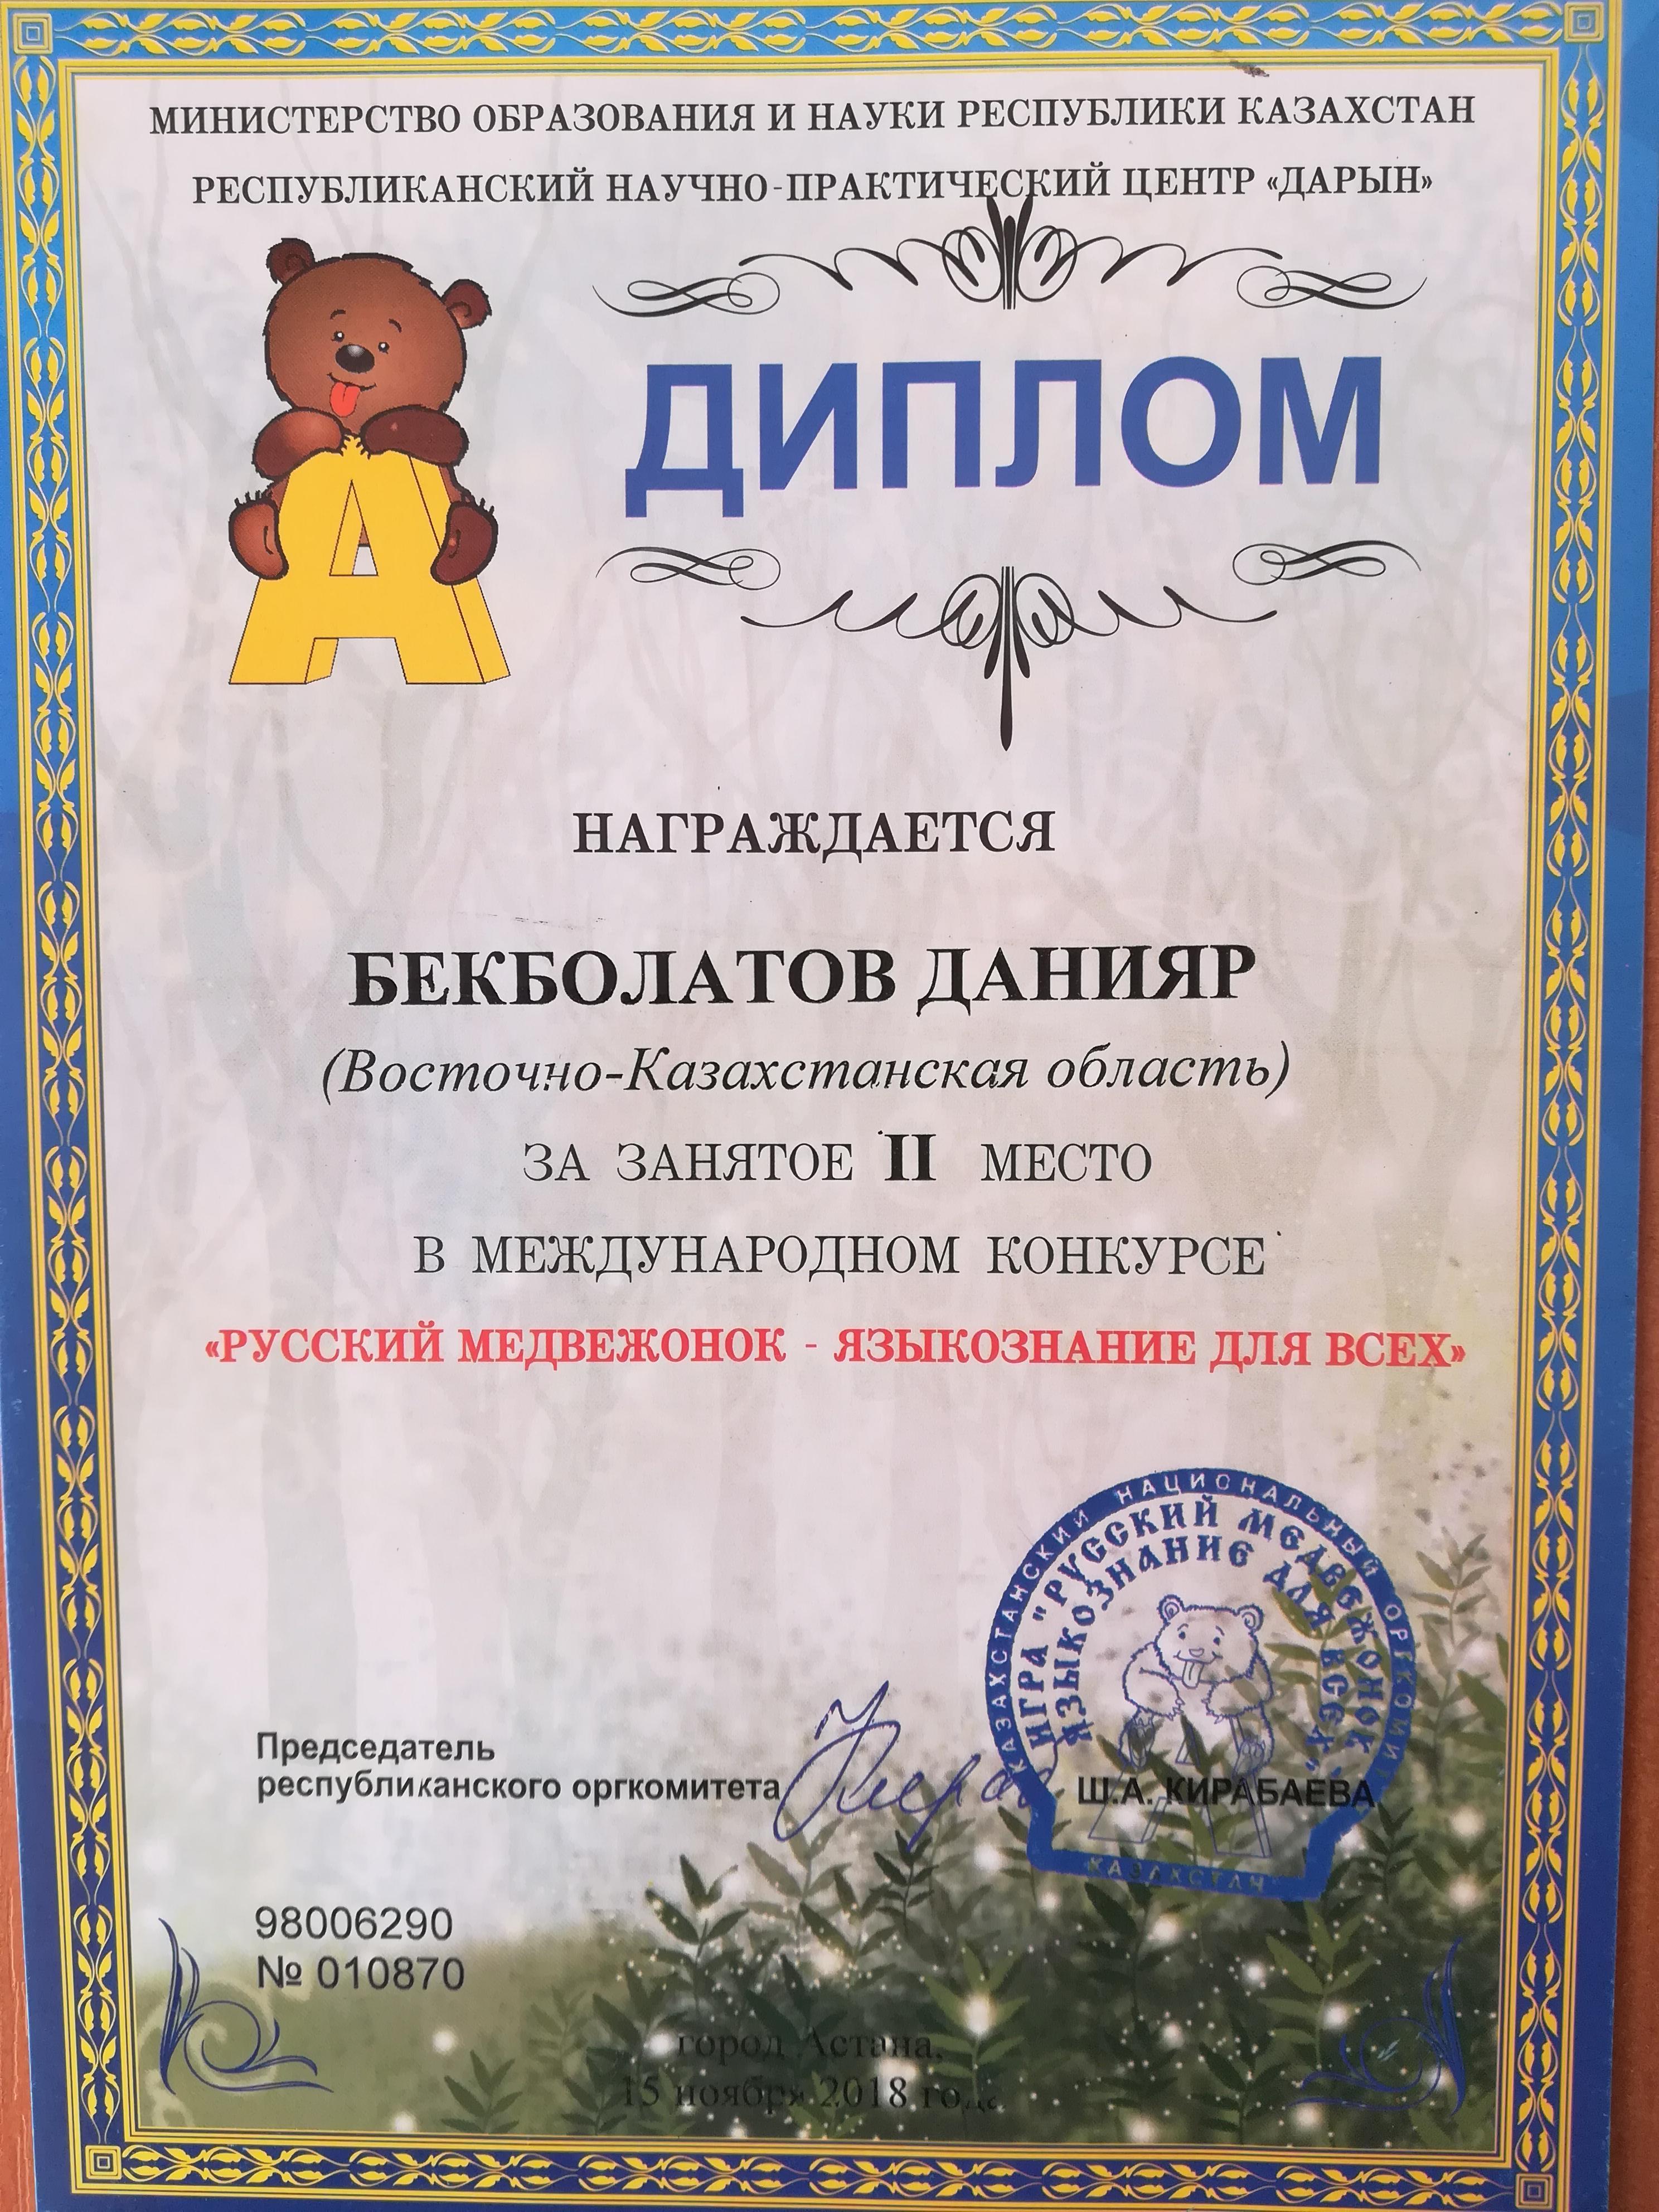 Международный конкурс "Русский медвежонок-языкознание для всех"